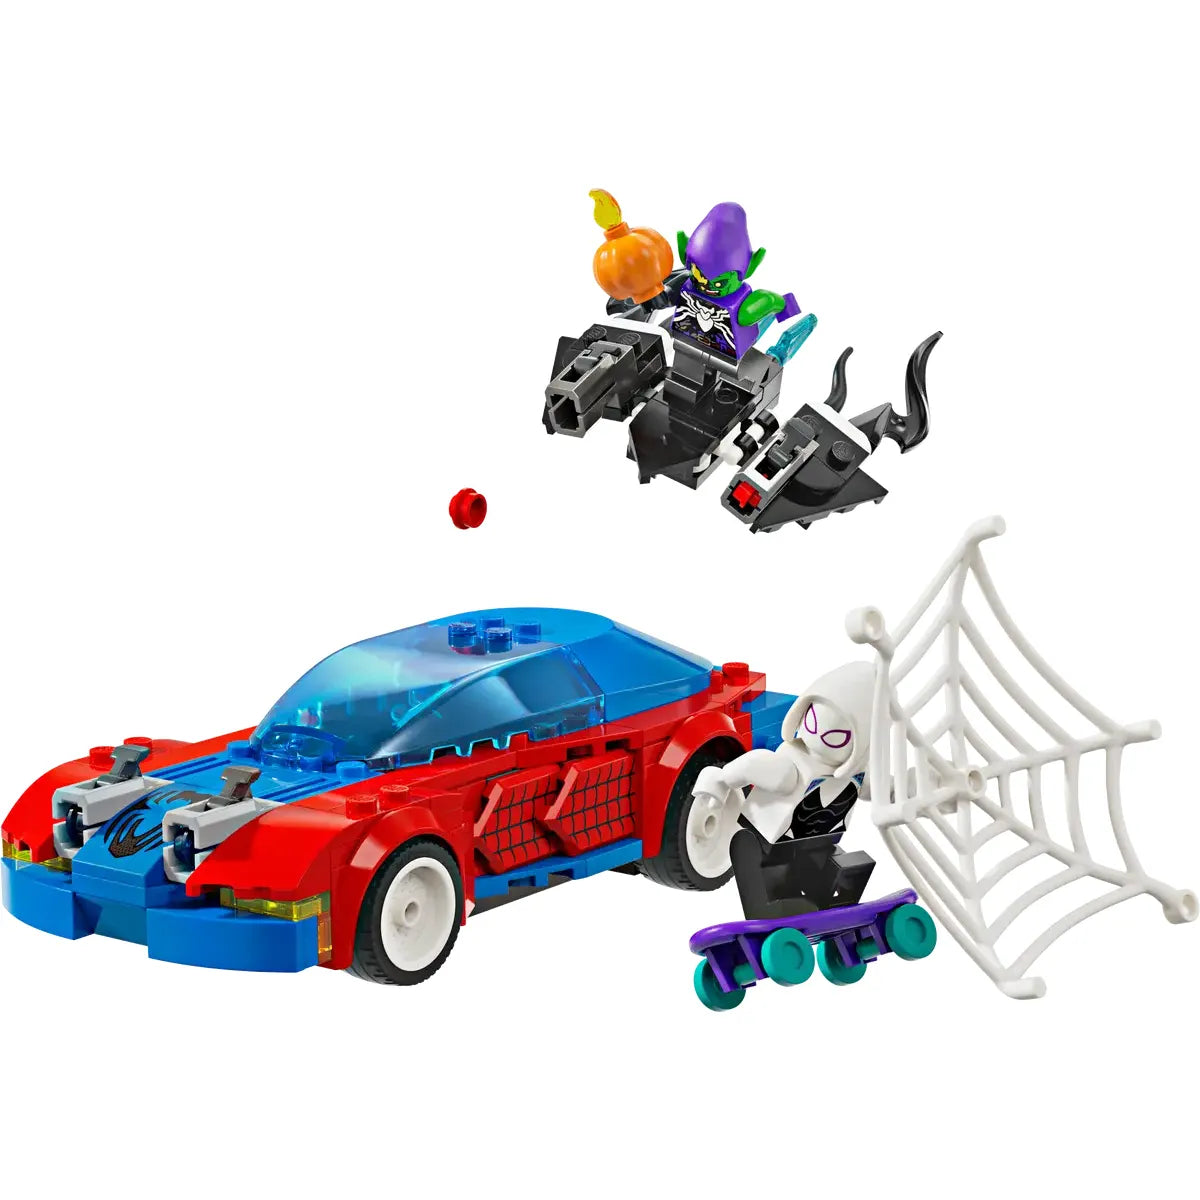 Lego Marvel Spider-man Race Car & Venom Green Goblin